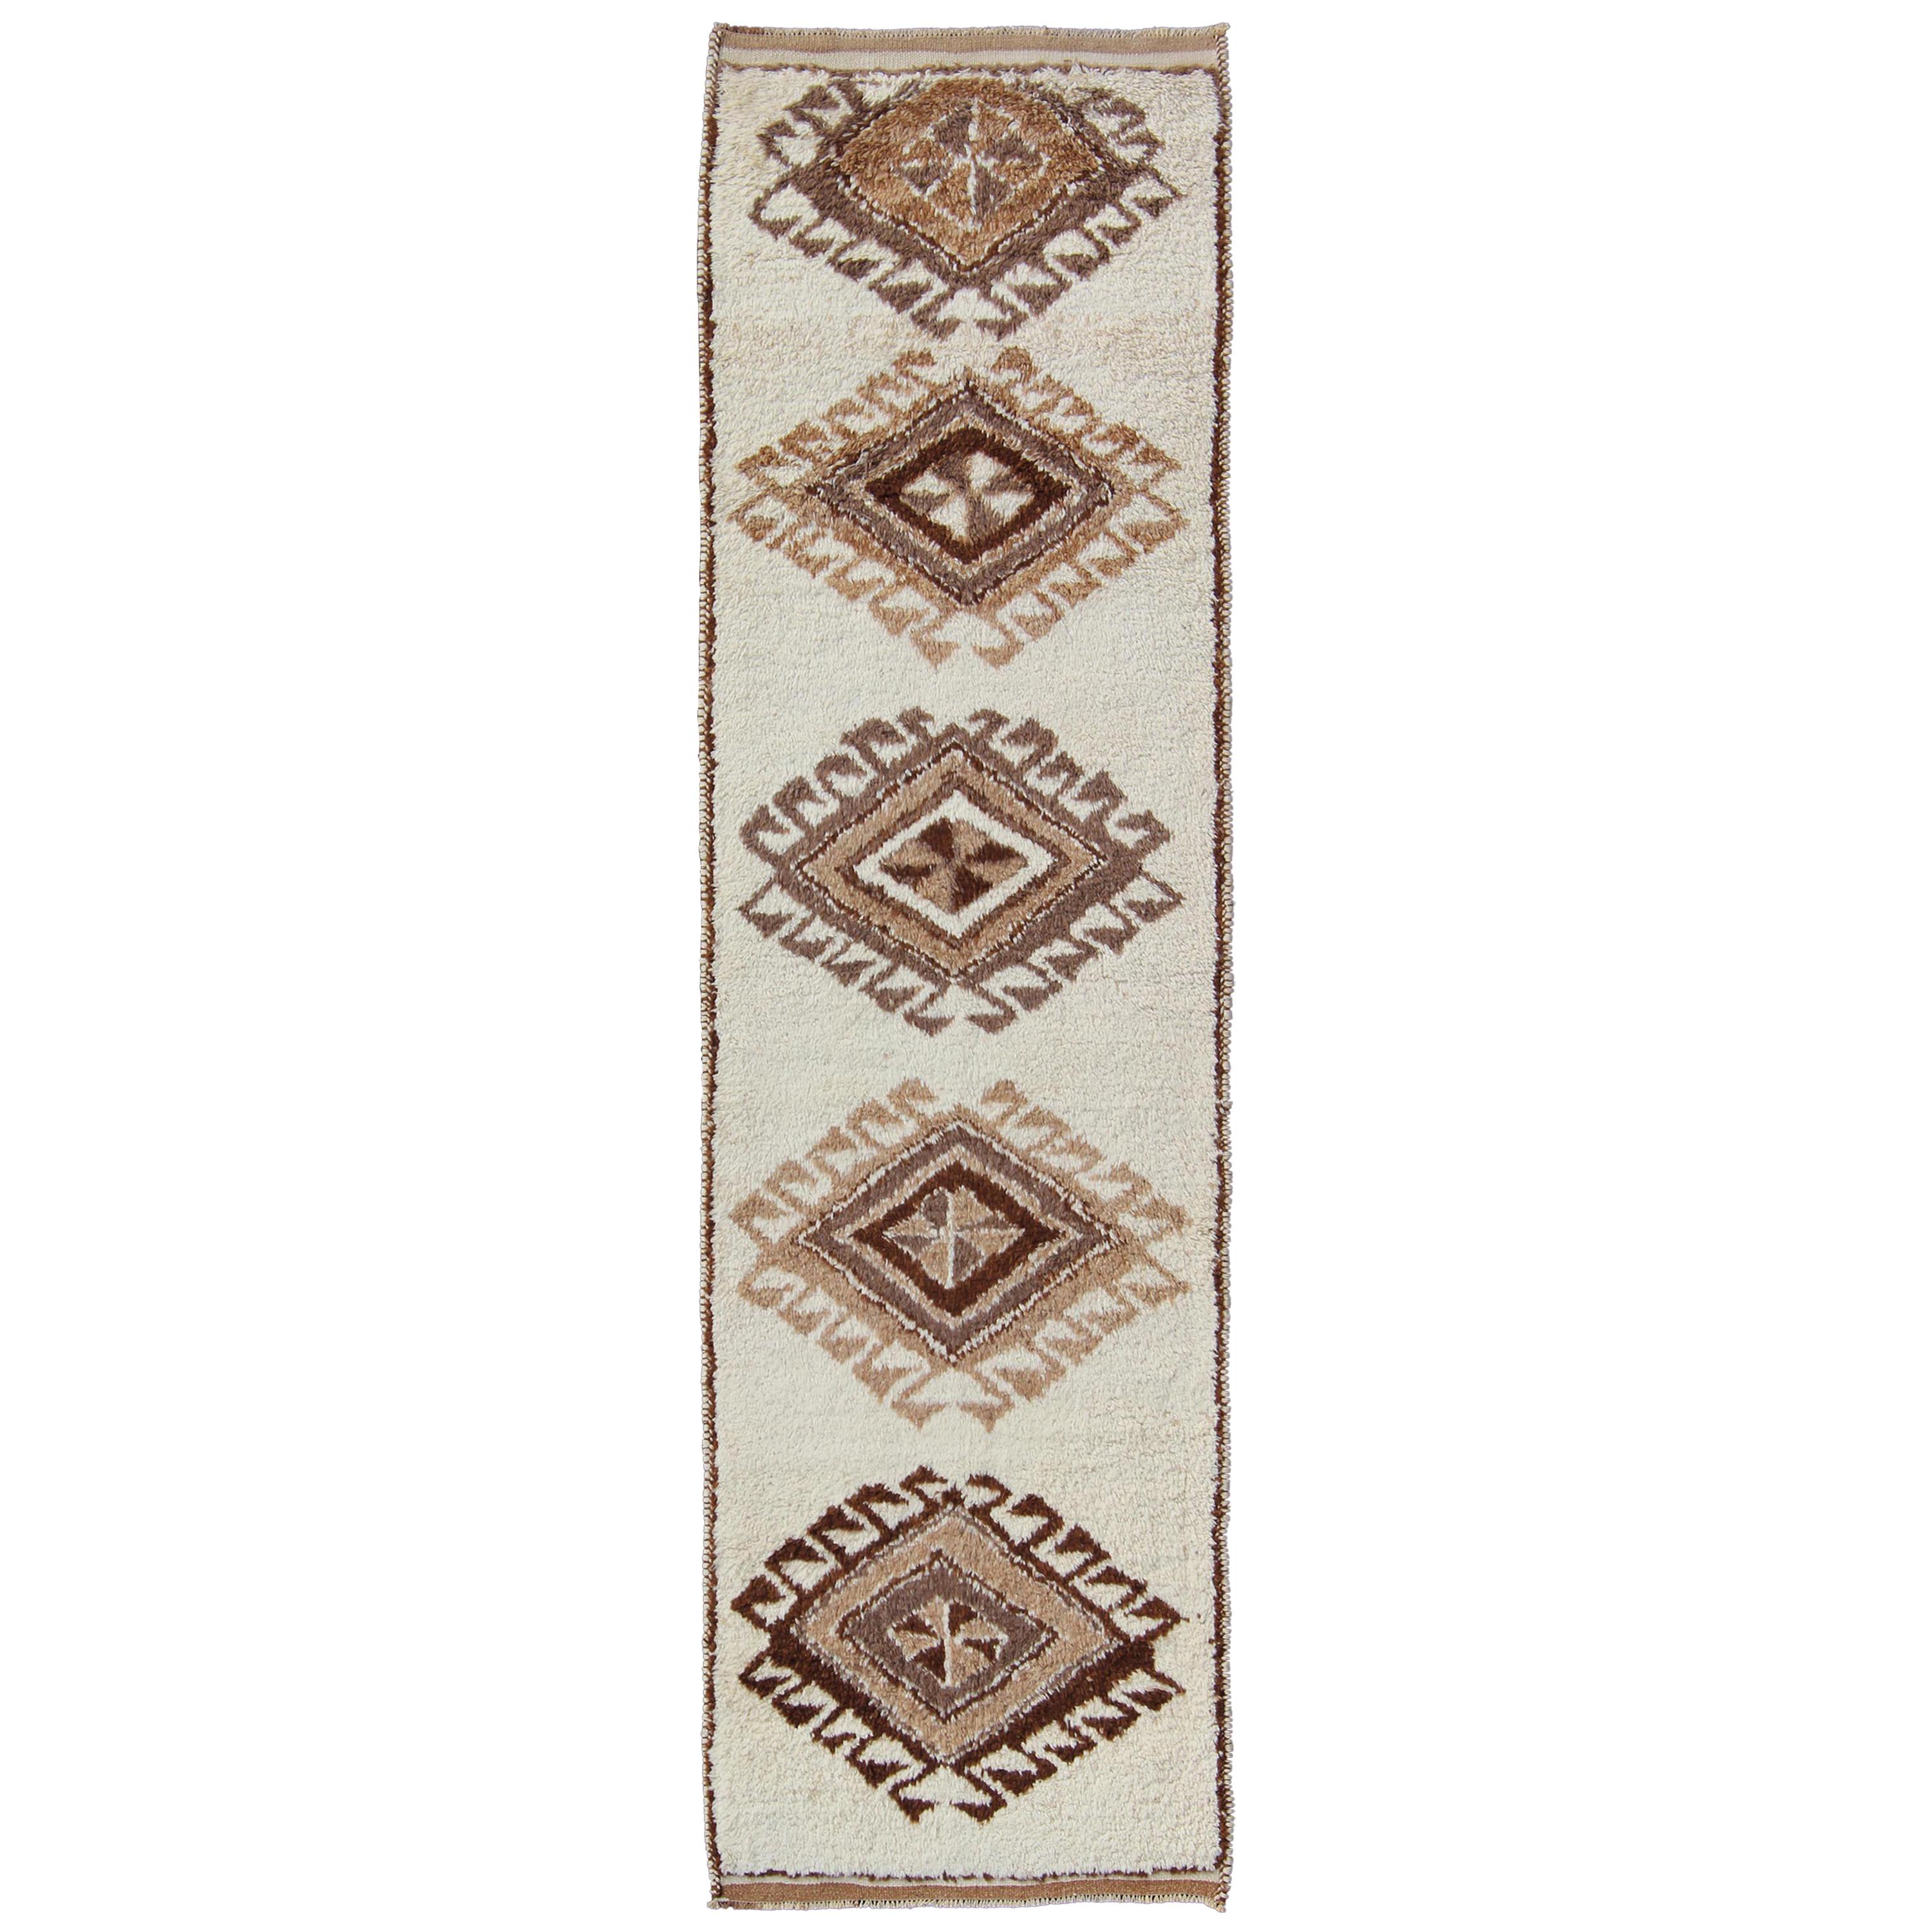 Türkischer Tulu-Galerie-Teppich mit Stammes-Diamant-Design in Creme und Braun, Vintage